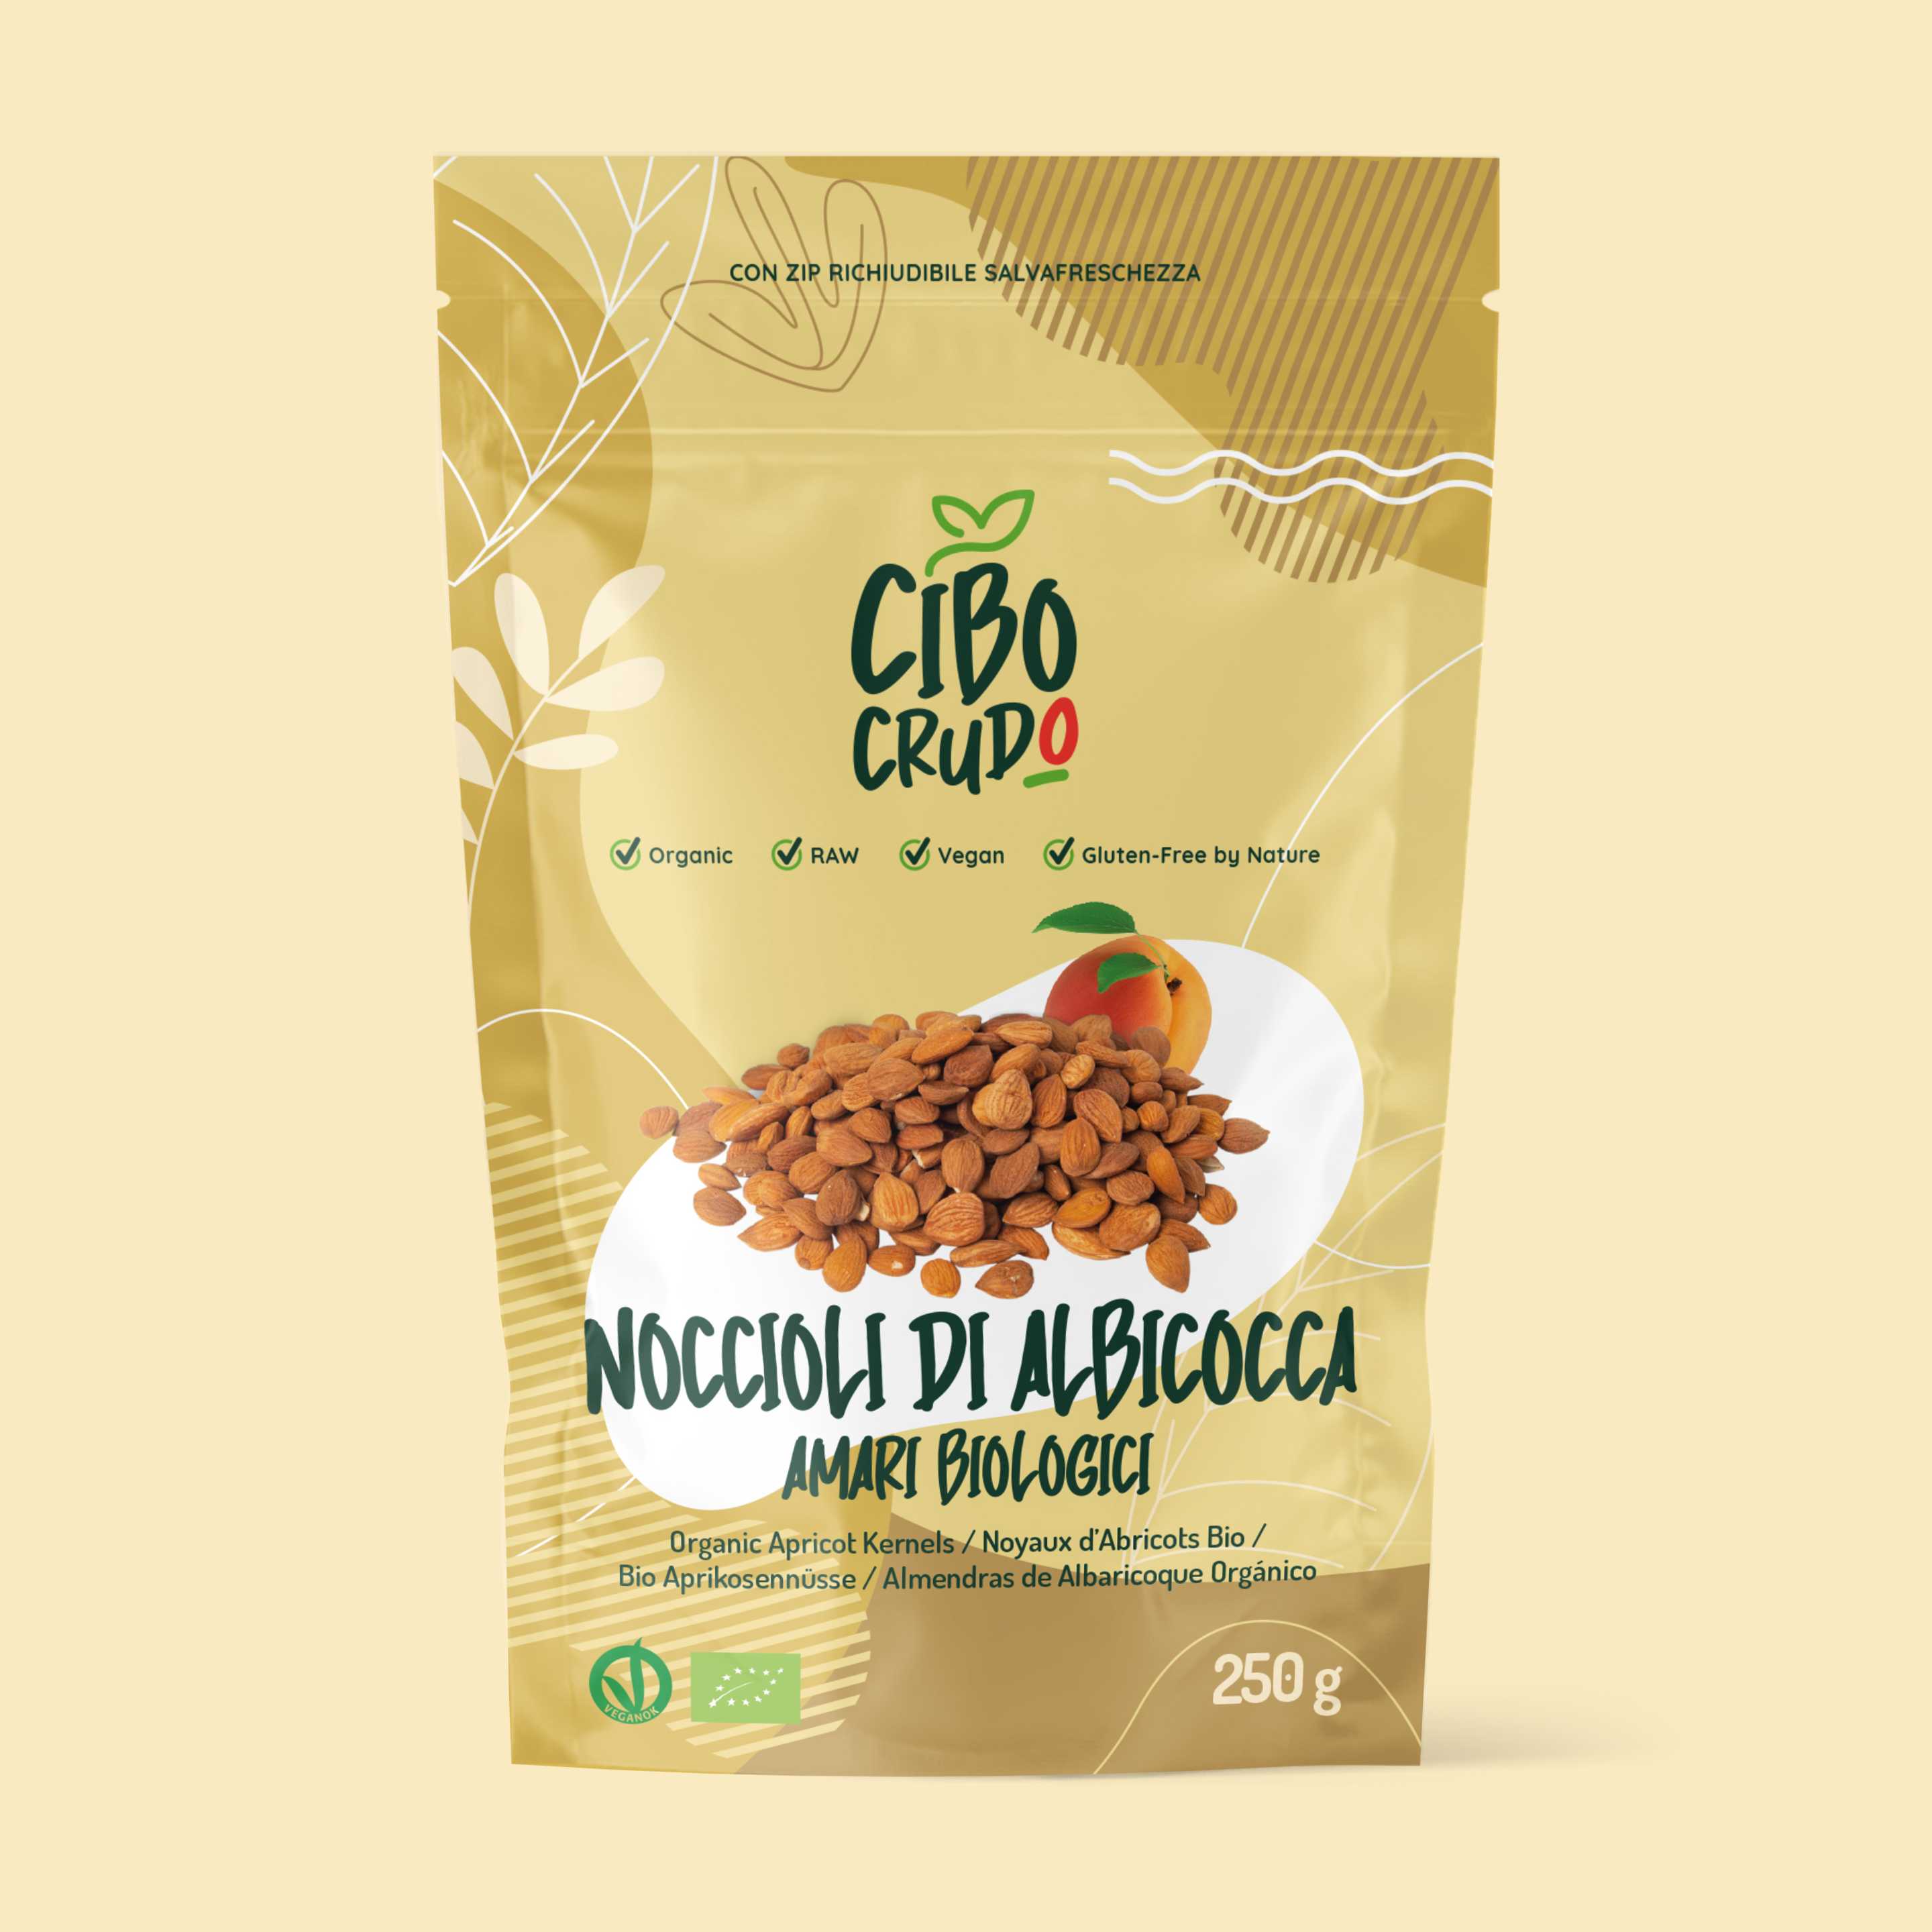 Armelline: Mandorle di Albicocca Amare Bio & Crude